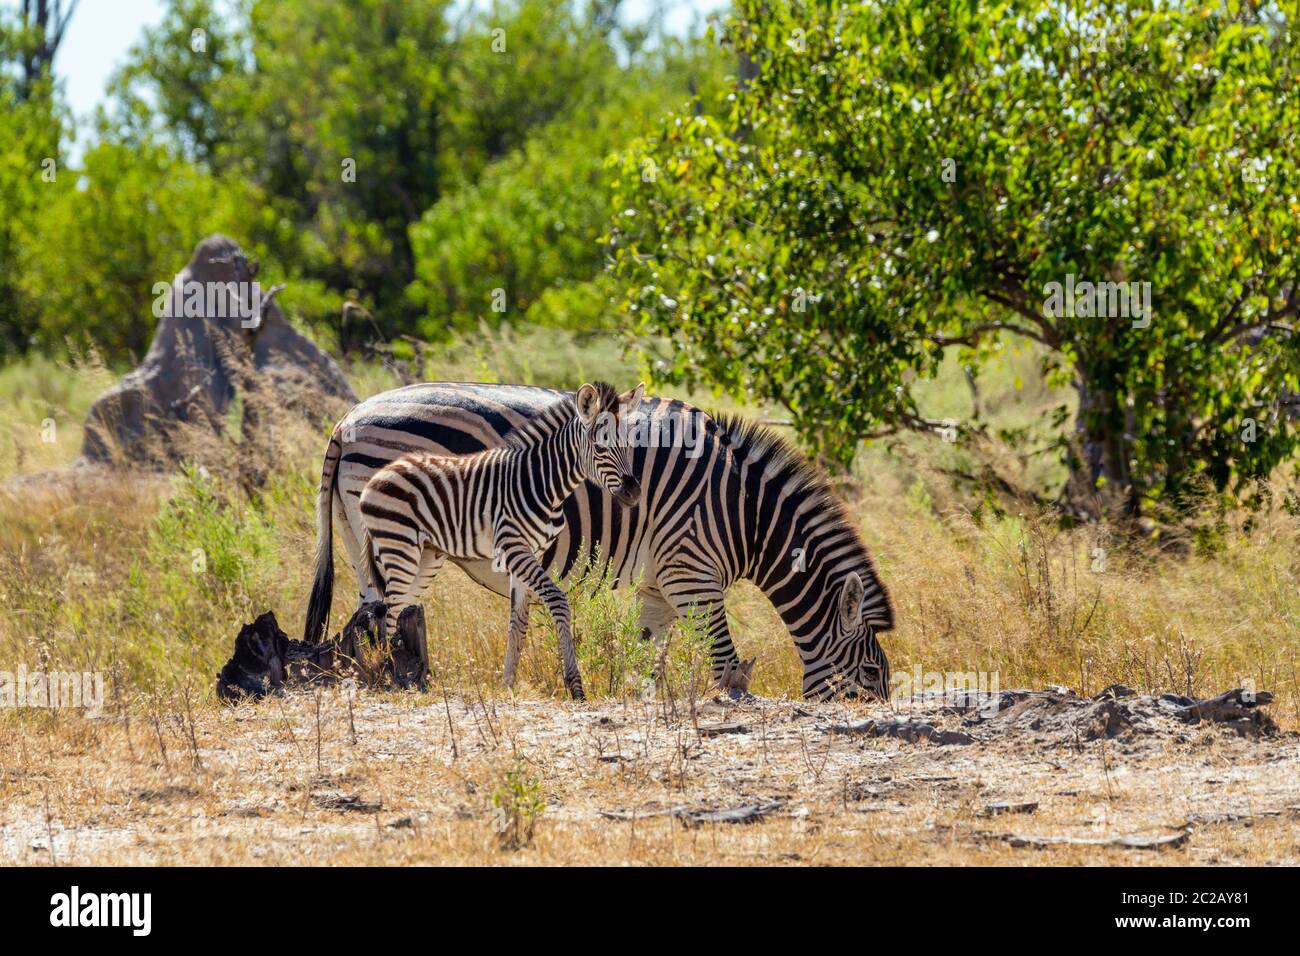 Carino il vitello di zebra con la madre nel bush africano. Moremi Game Reserve, Botswana, Africa safari wildlife Foto Stock